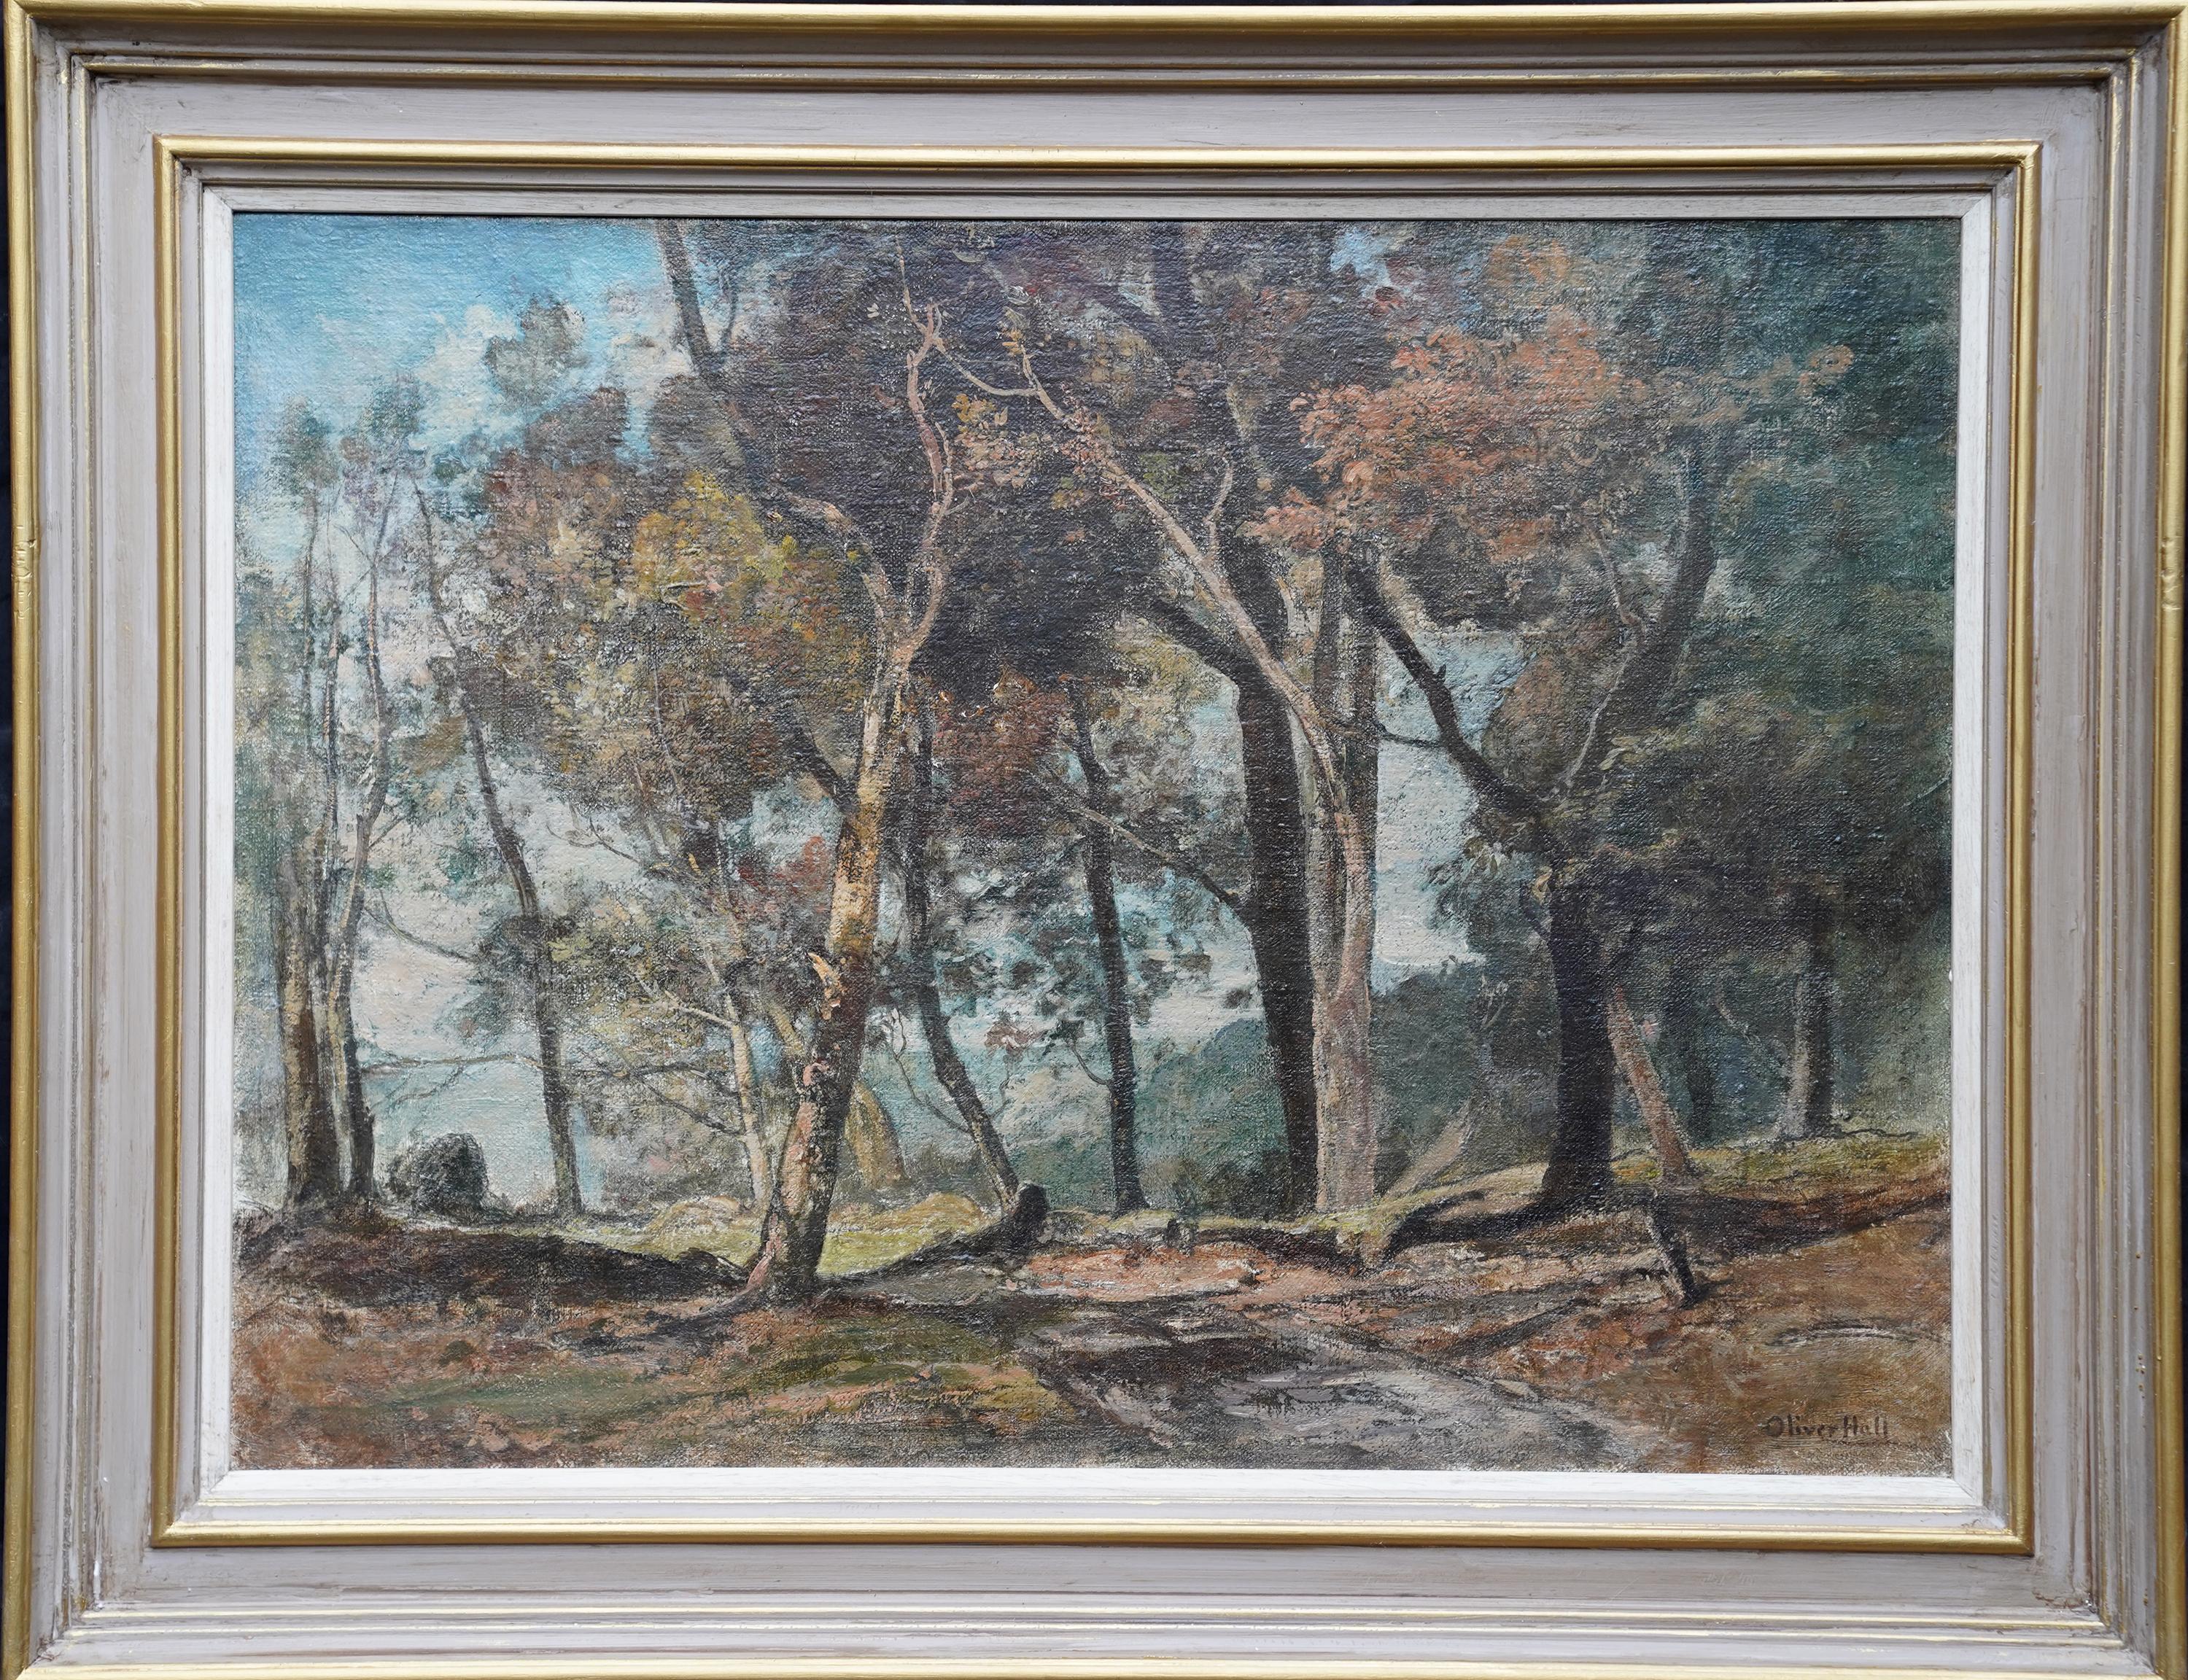 Landscape Painting Oliver Hall, R.A., R.E., R.S.W. - Woodland Path - Peinture à l'huile de paysage en bois impressionniste britannique de 1930